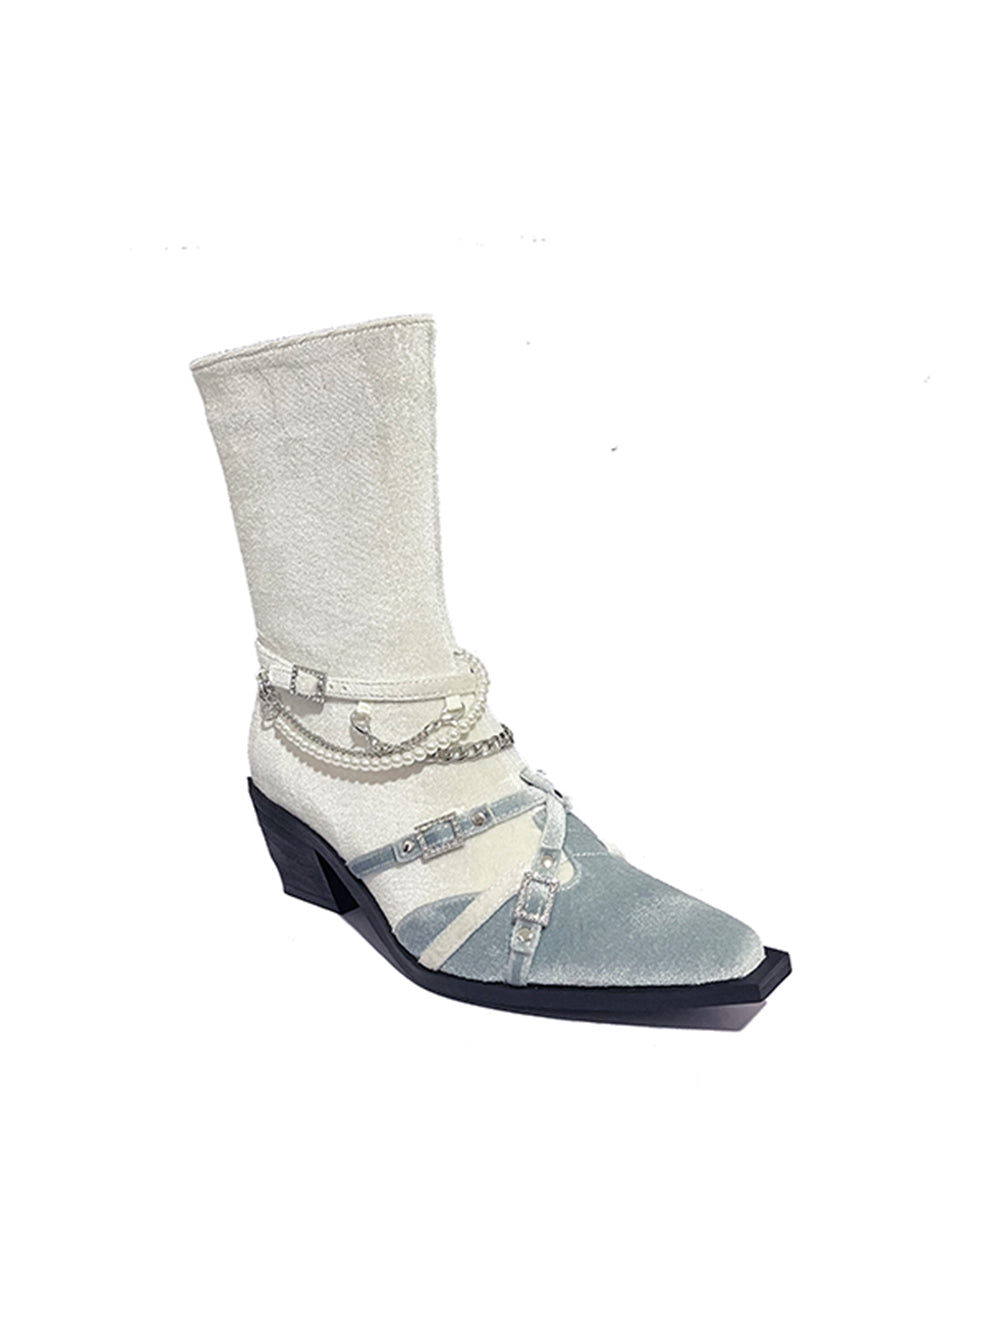 MUKTANK×AZ43 Silver Chain Chunky Heel Fashion Stitching Boots